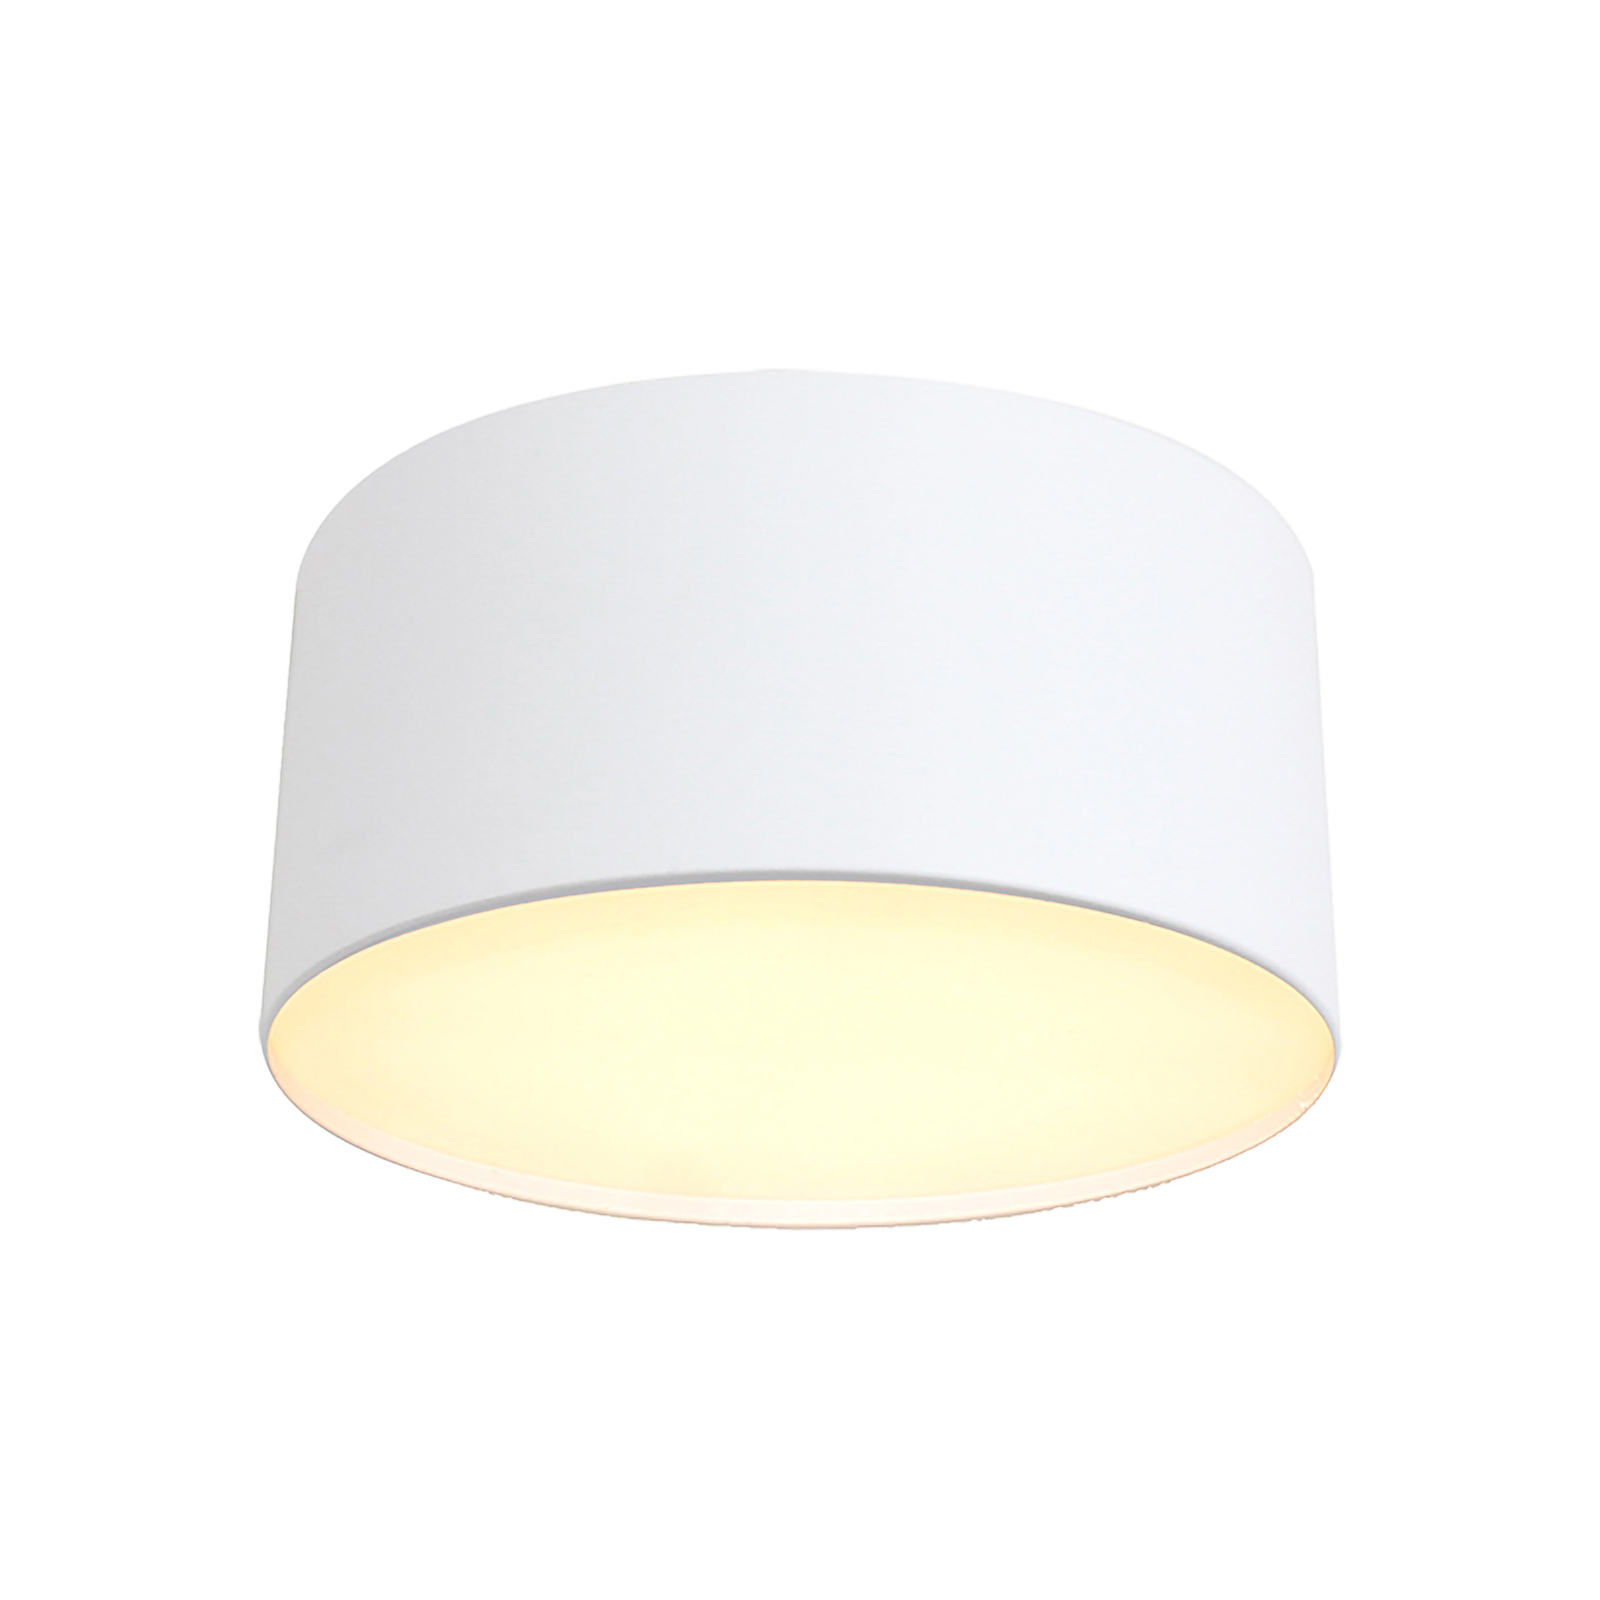 Lindby spot LED Nivoria, 11 x 6,5 cm, blanc sable, set de 4 pièces